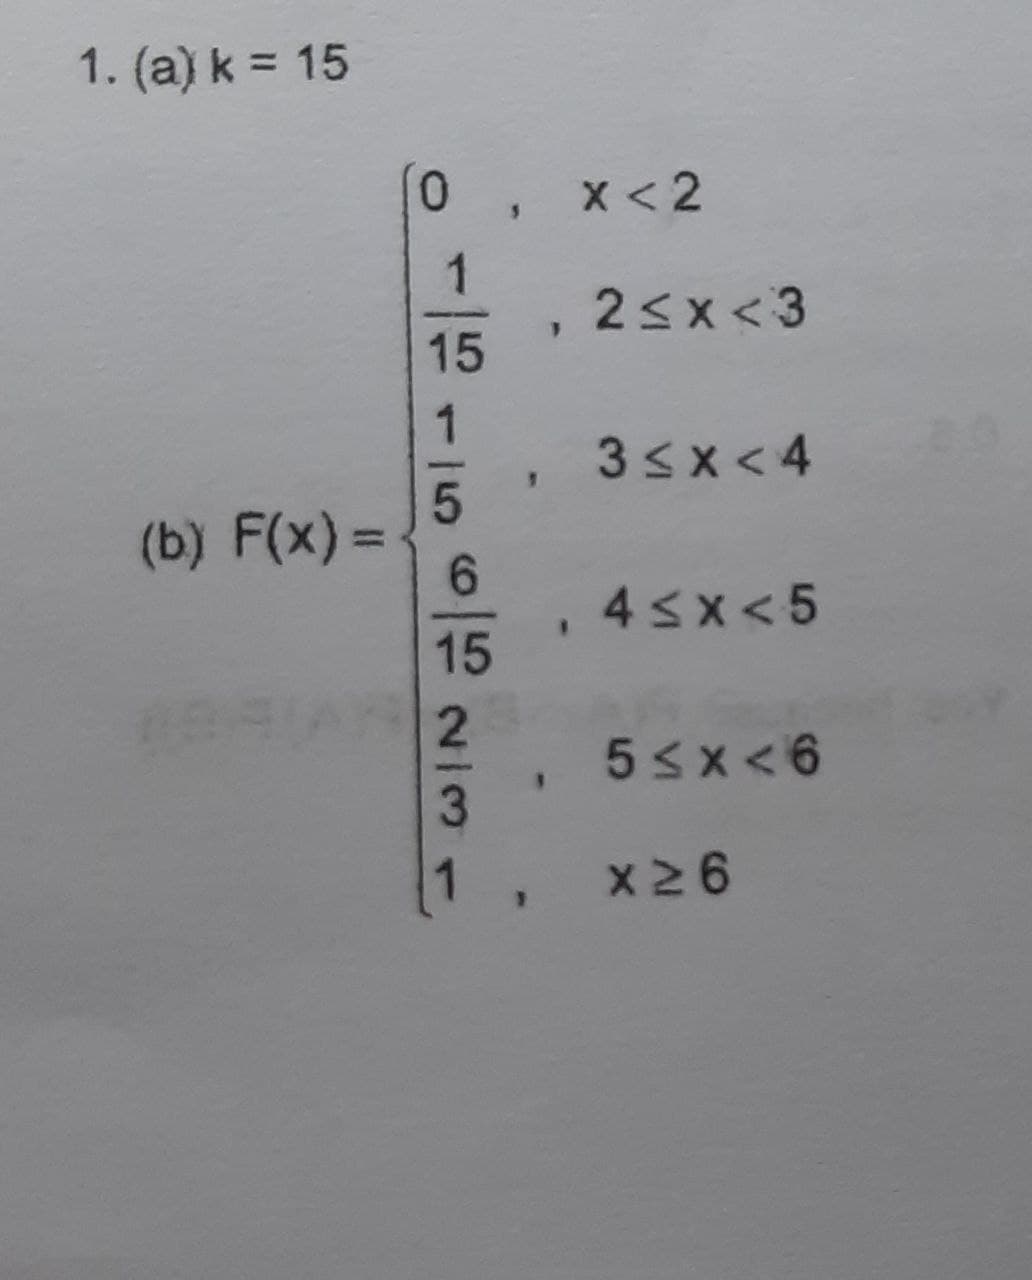 1. (a) k = 15
0.
x < 2
1
2<x <3
15
3sx<4
(b) F(x) =
4sx<5
15
5sx<6
1, x26
2/3
1,
